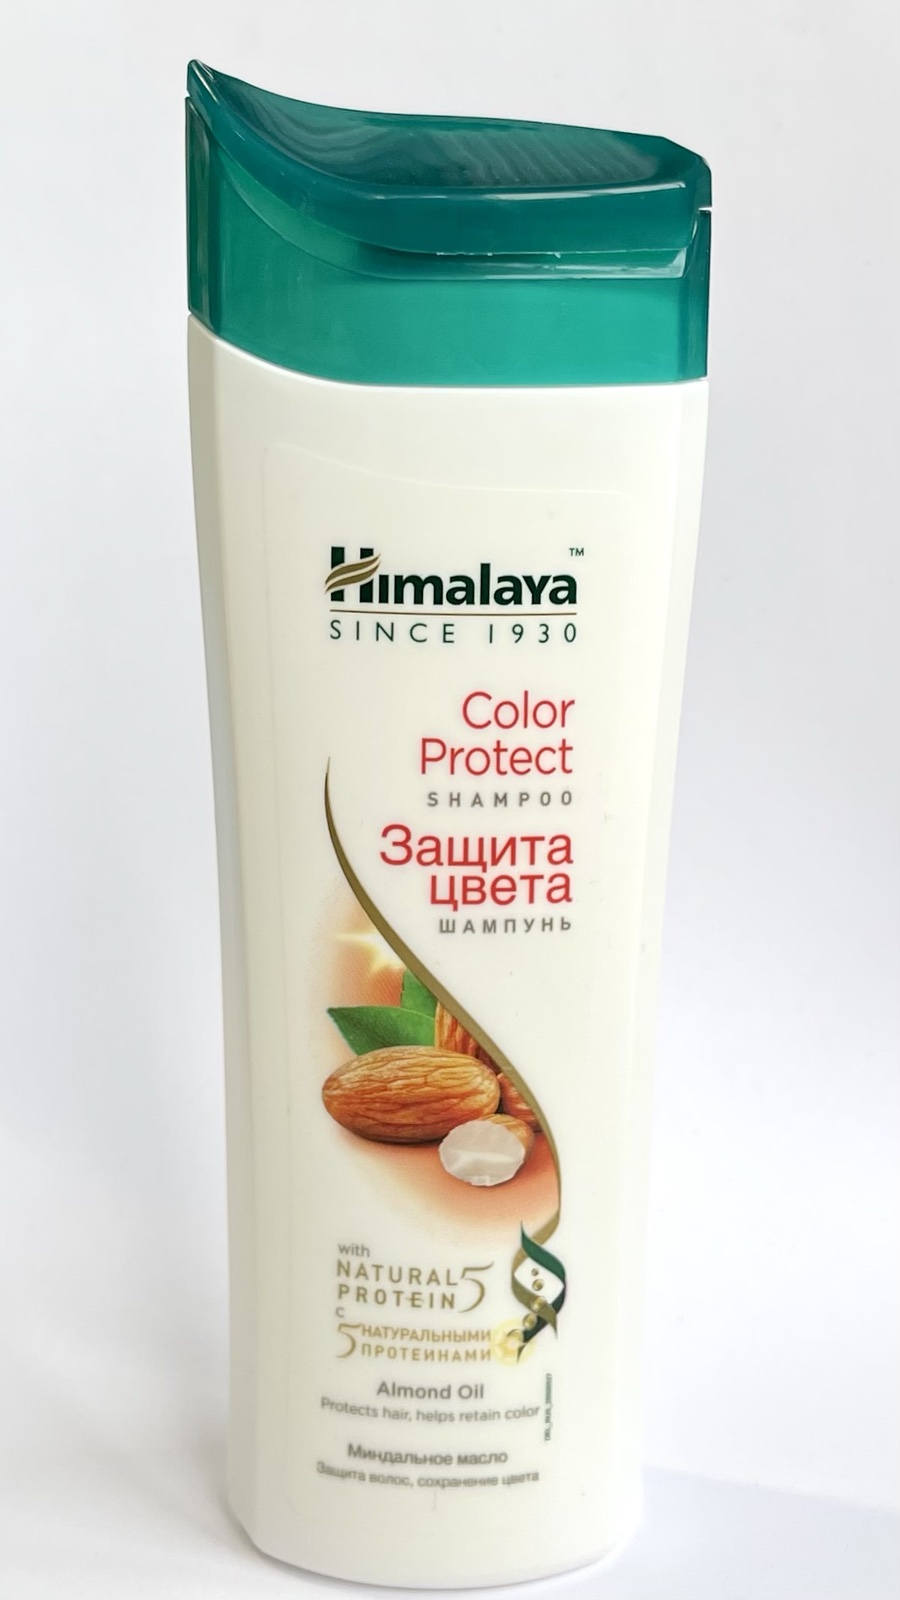 COLOR PROTECT Shampoo, Himalaya (Шампунь ЗАЩИТА ЦВЕТА, защита волос, сохранение цвета, Хималая), 200 мл.